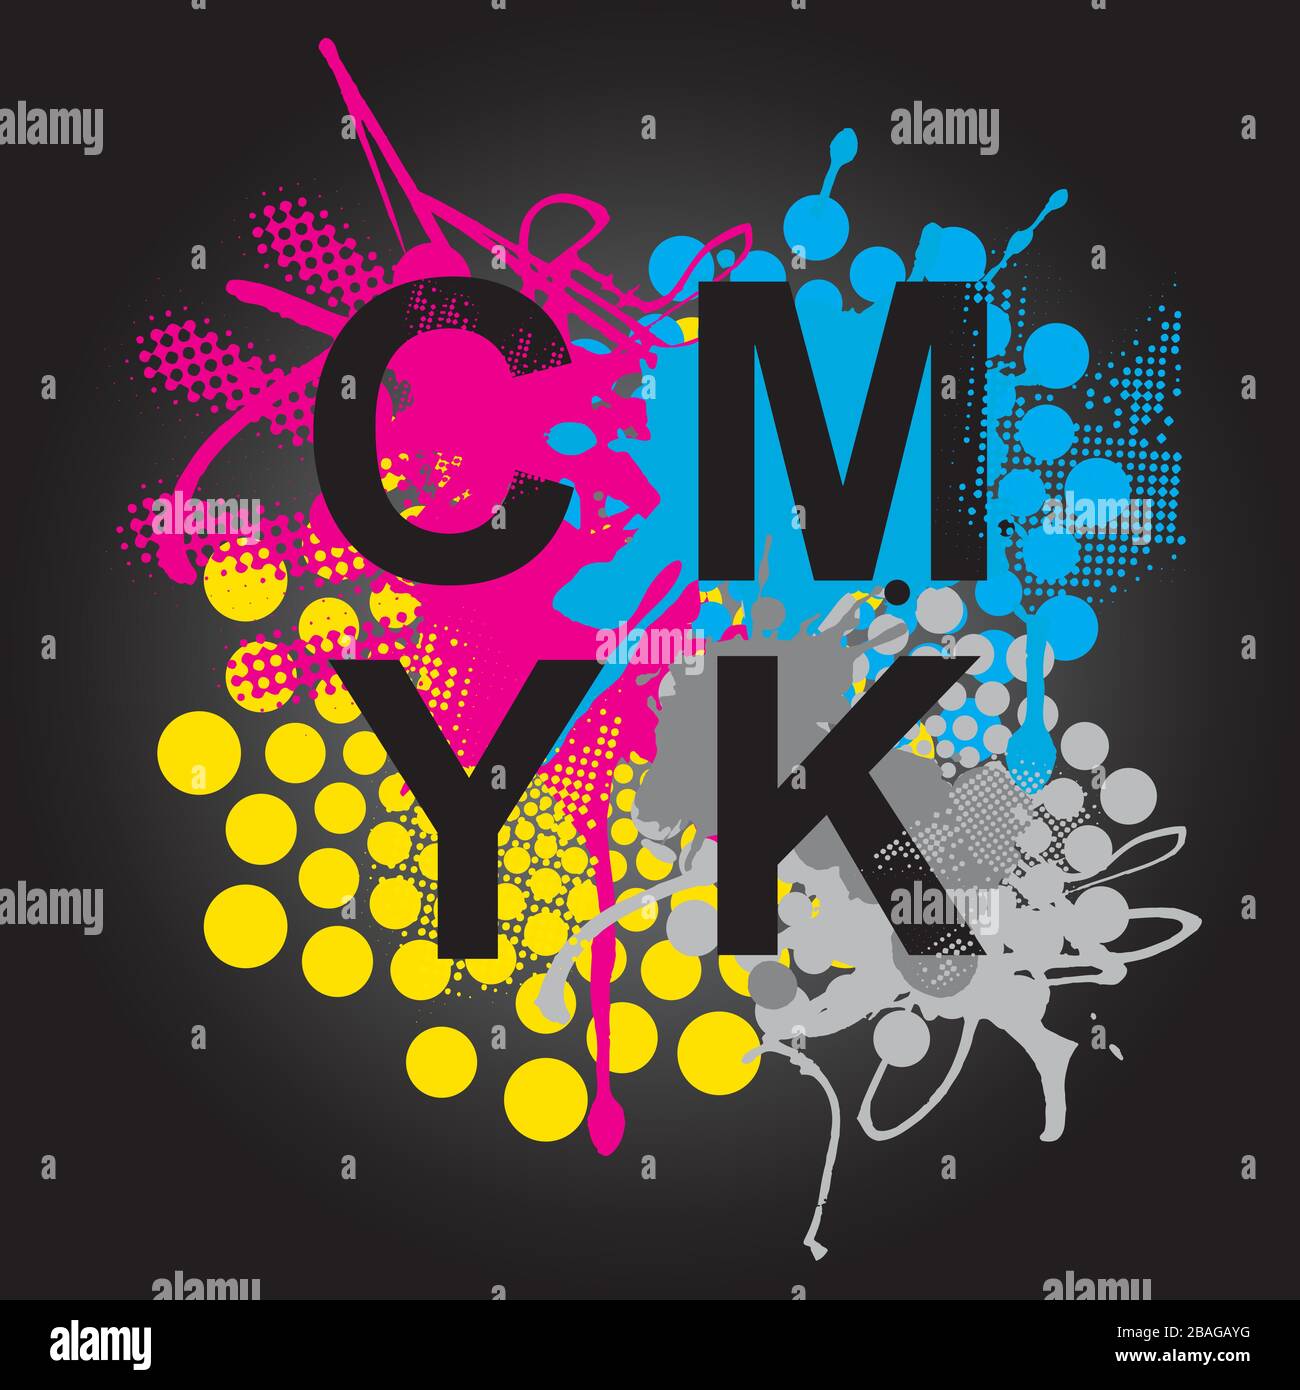 CMYK-Druckfarben, ausdrucksstarker Hintergrund. CMYK Cyan magentafarbene schwarze Tinten und CMYK-Zeichen auf schwarzem Hintergrund. Vektor verfügbar. Stock Vektor